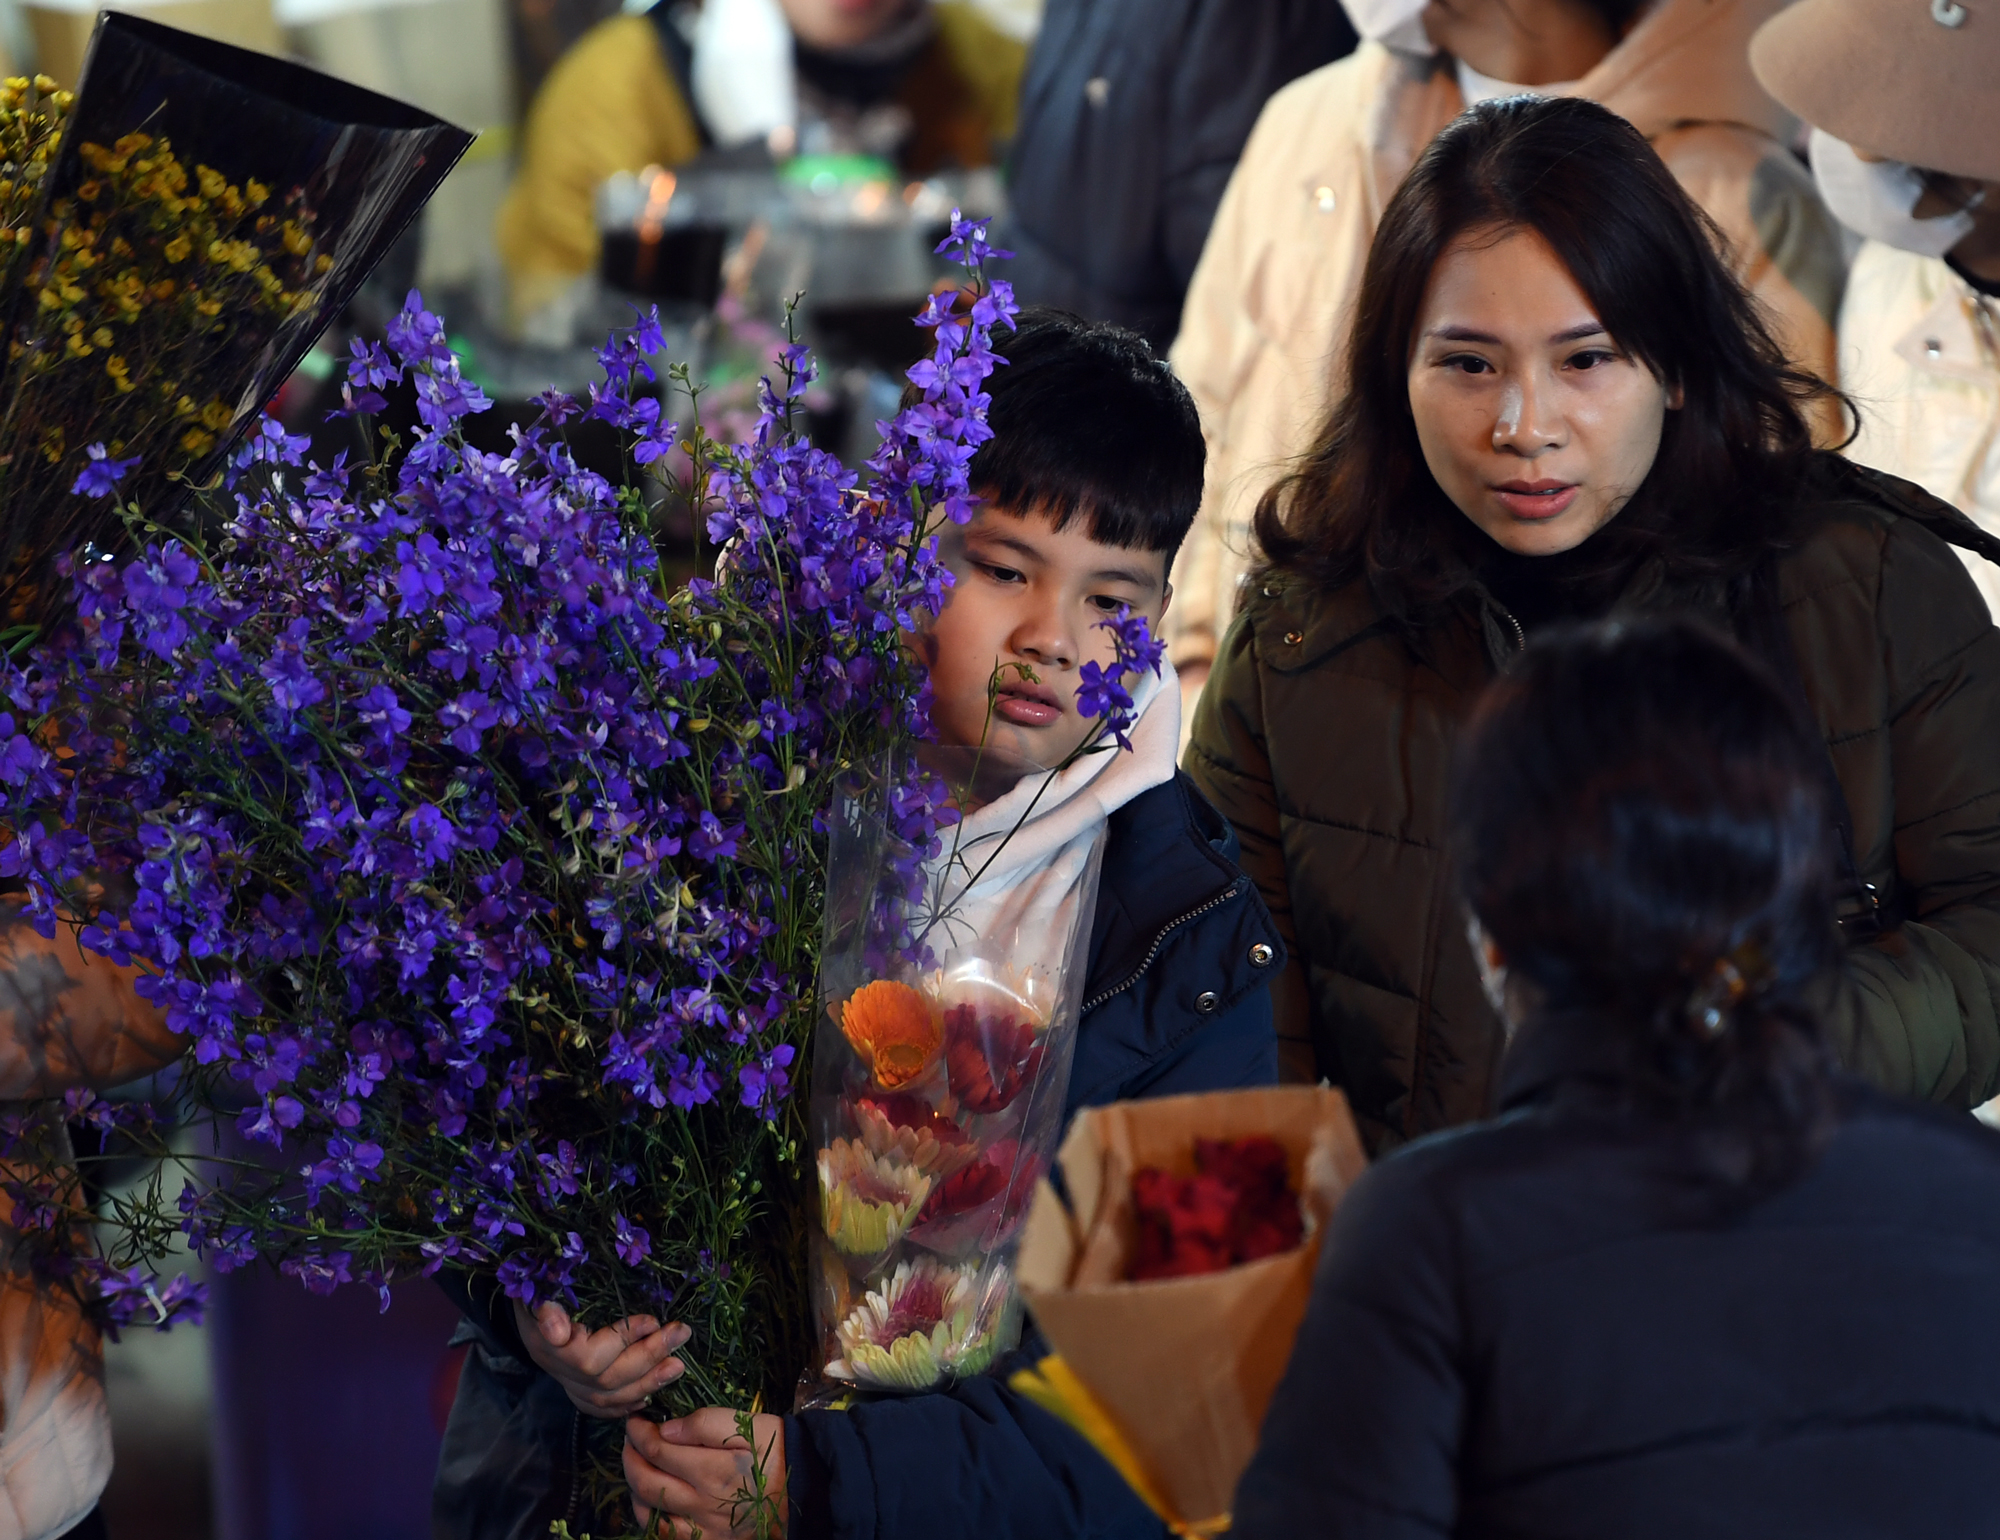 Rét buốt 13 độ C, nhiều cặp đôi tay trong tay đi sắm hoa Tết tại chợ hoa Quảng An - Ảnh 14.